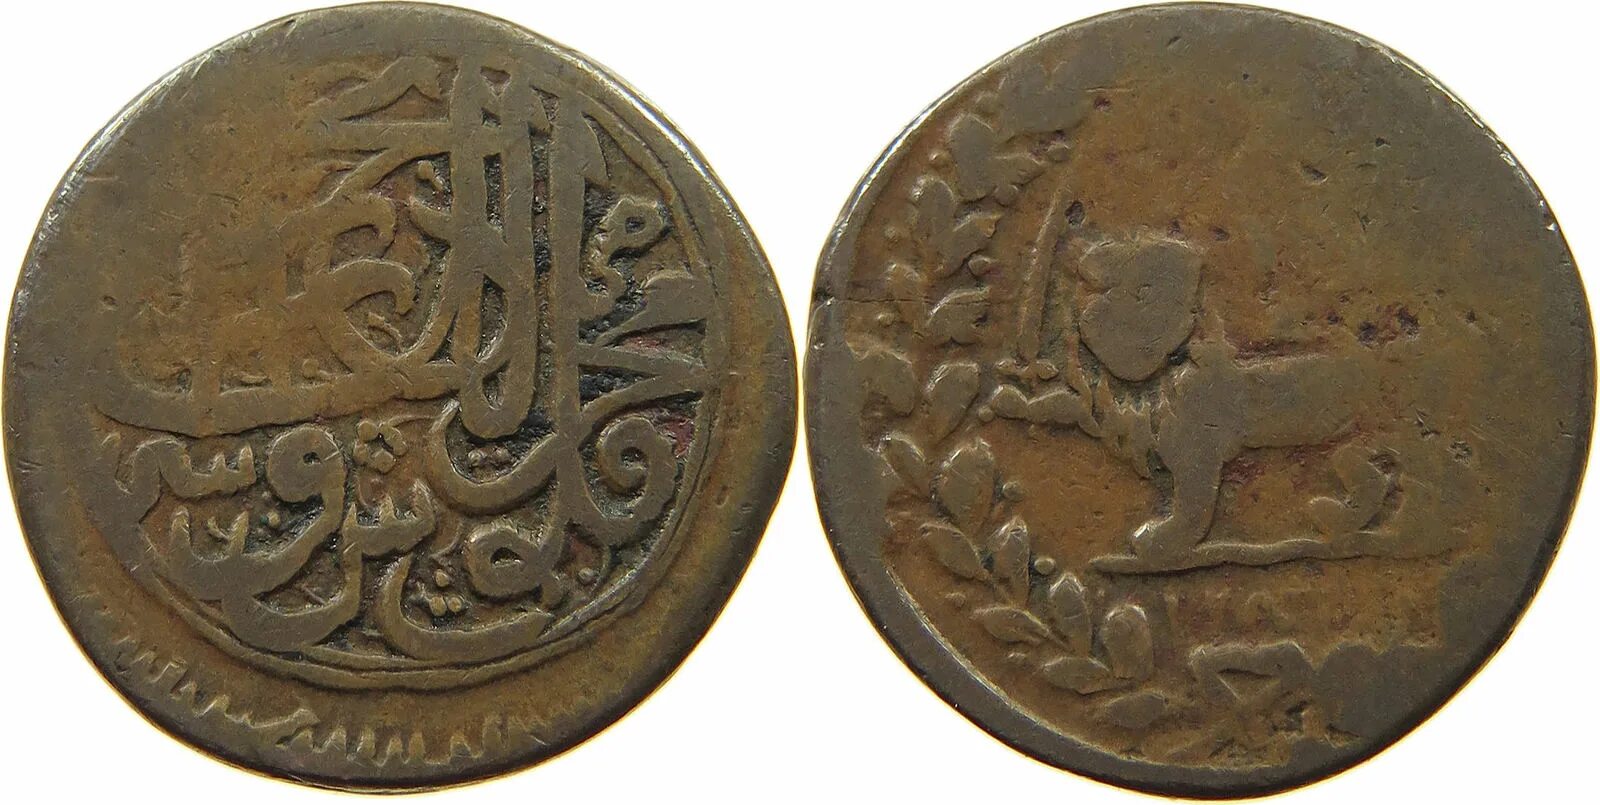 Иранская монета 5 букв. Монеты Персия 1848~1896. Монеты Melik-Shah. Монеты Персии 19 века.